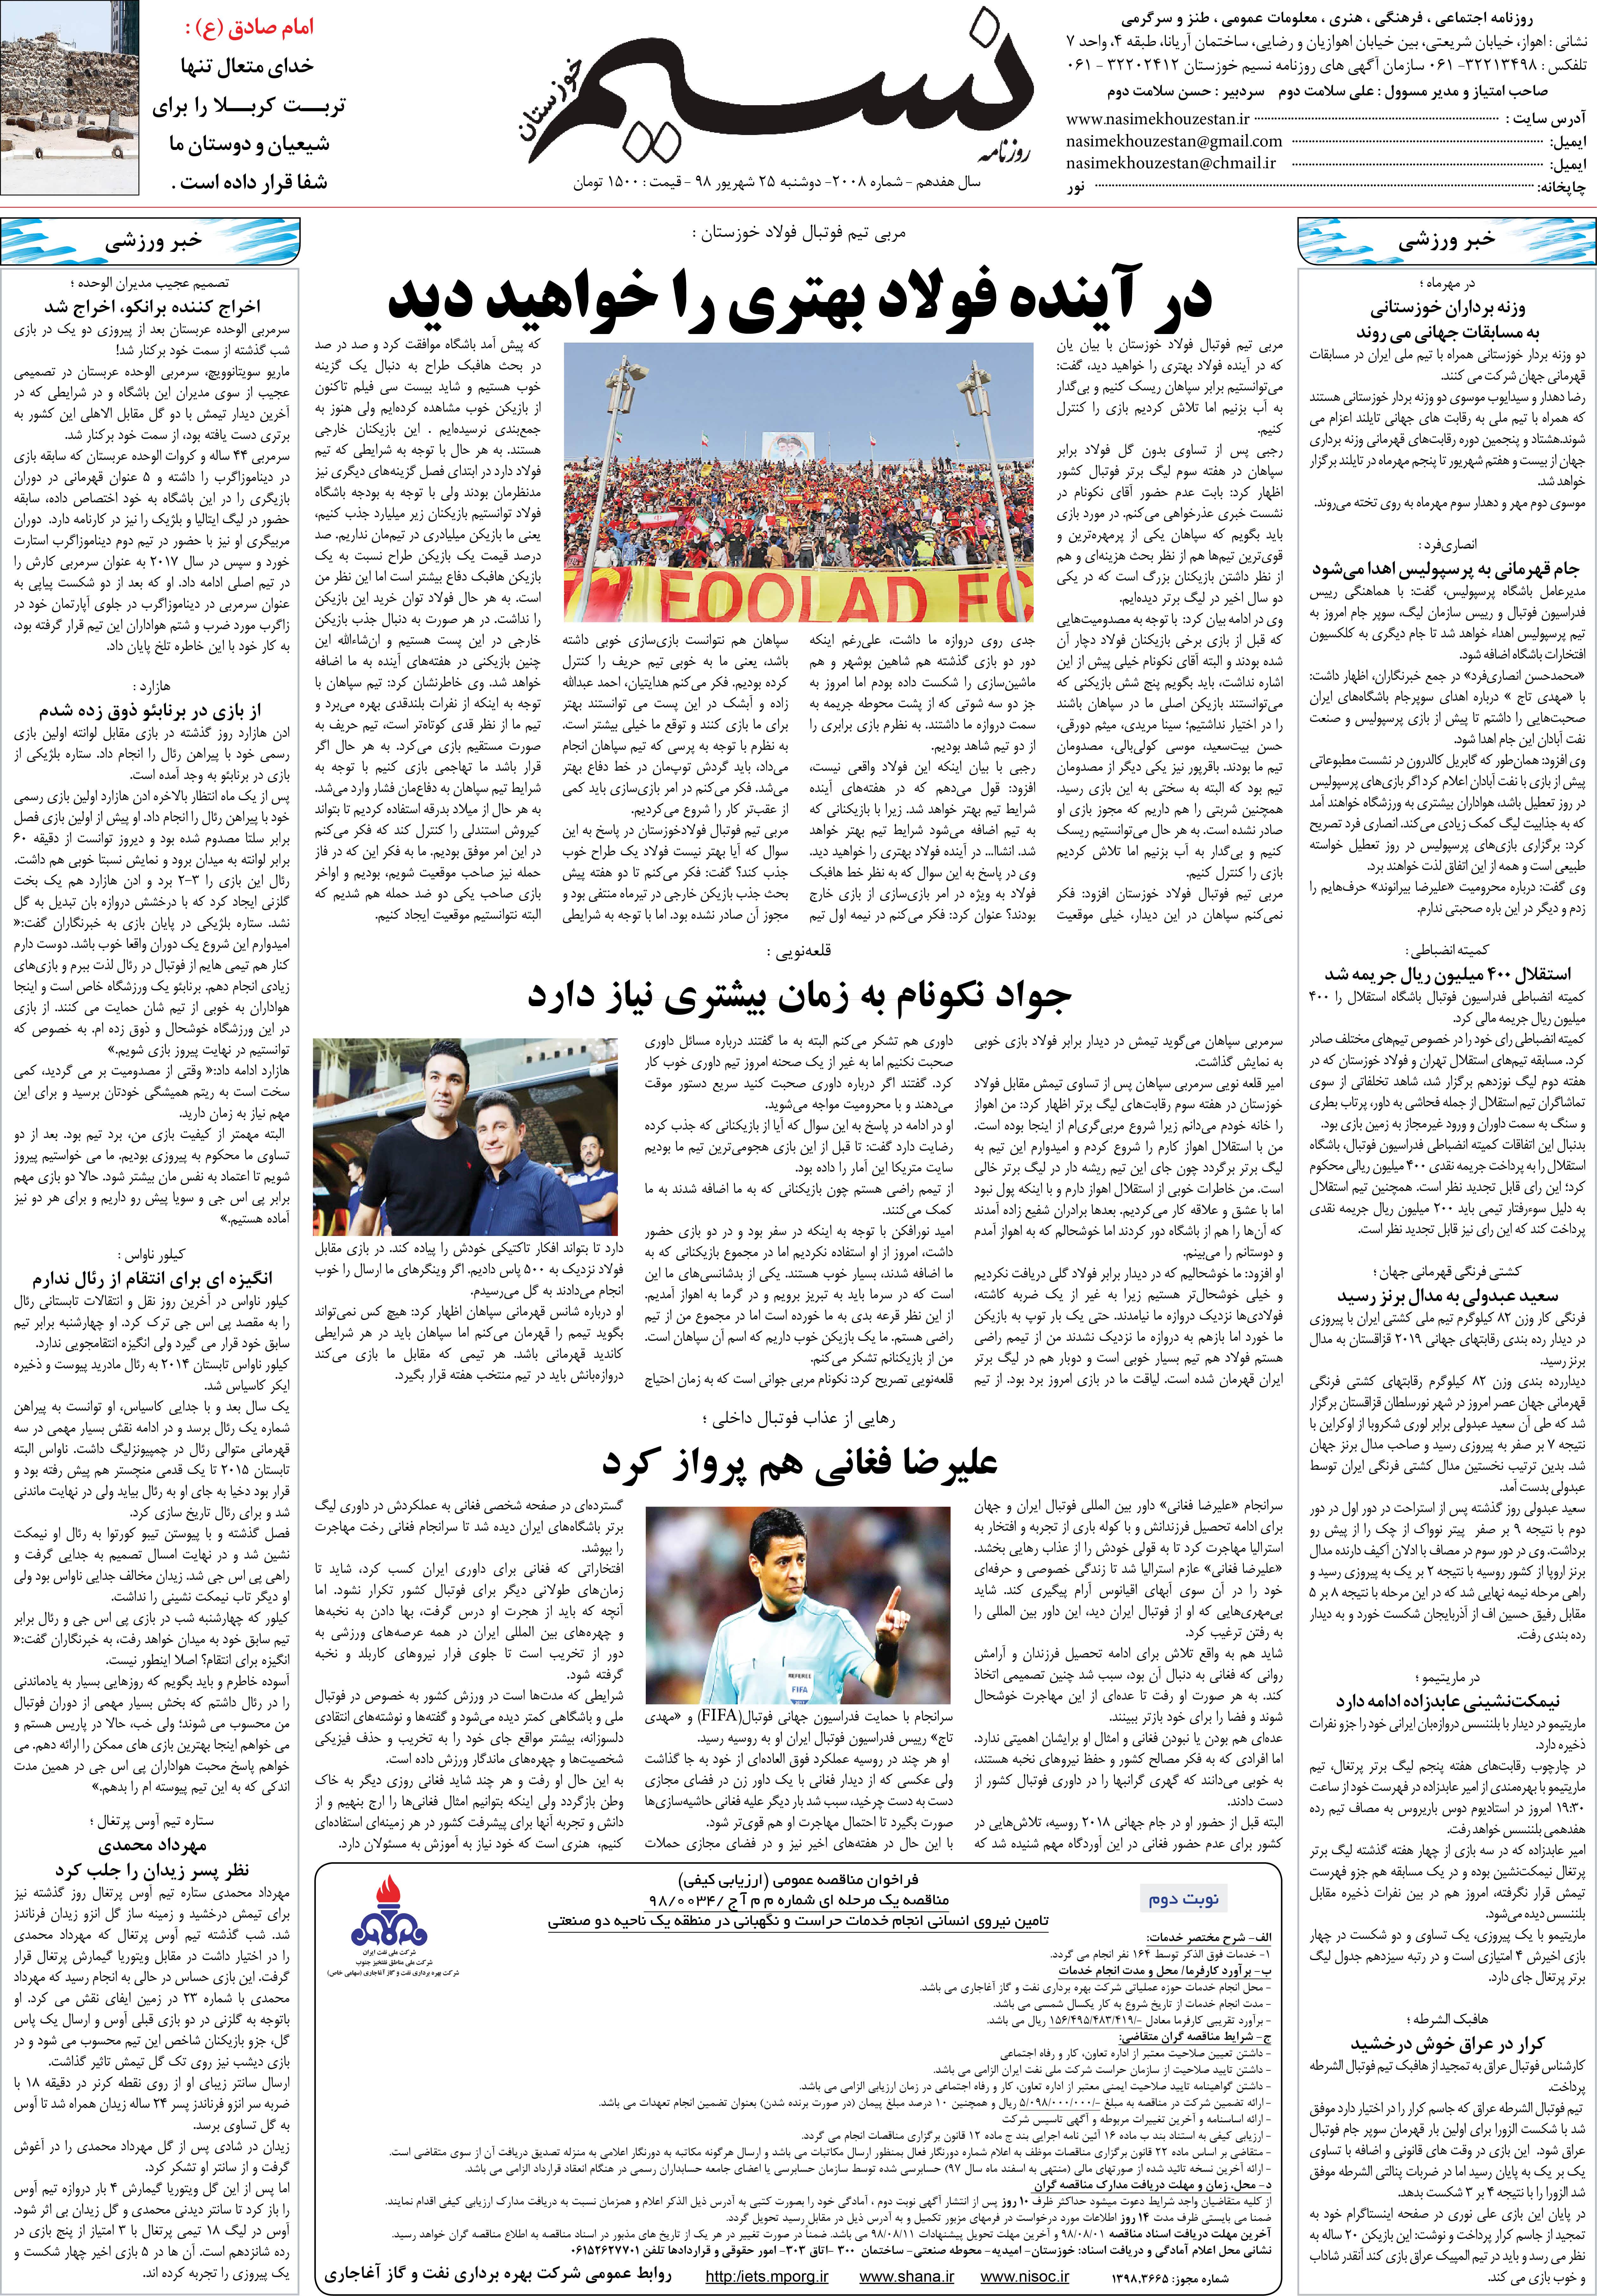 صفحه آخر روزنامه نسیم شماره 2008